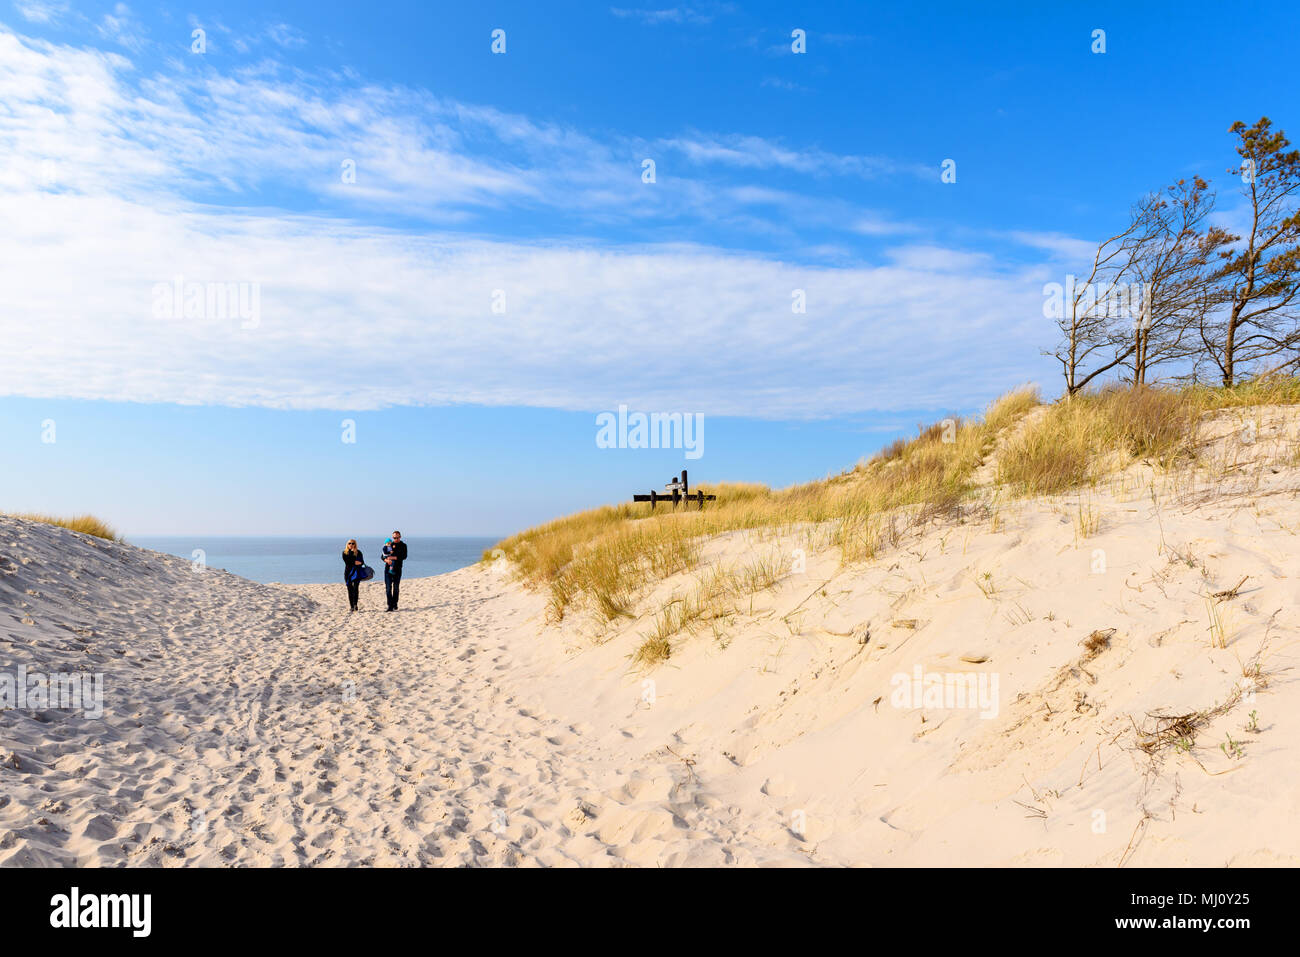 CZOLPINO, Polonia - 29 Aprile 2018: persone percorso a piedi alla bellissima spiaggia con sabbia bianca e mare blu. Mar baltico. Polonia Foto Stock